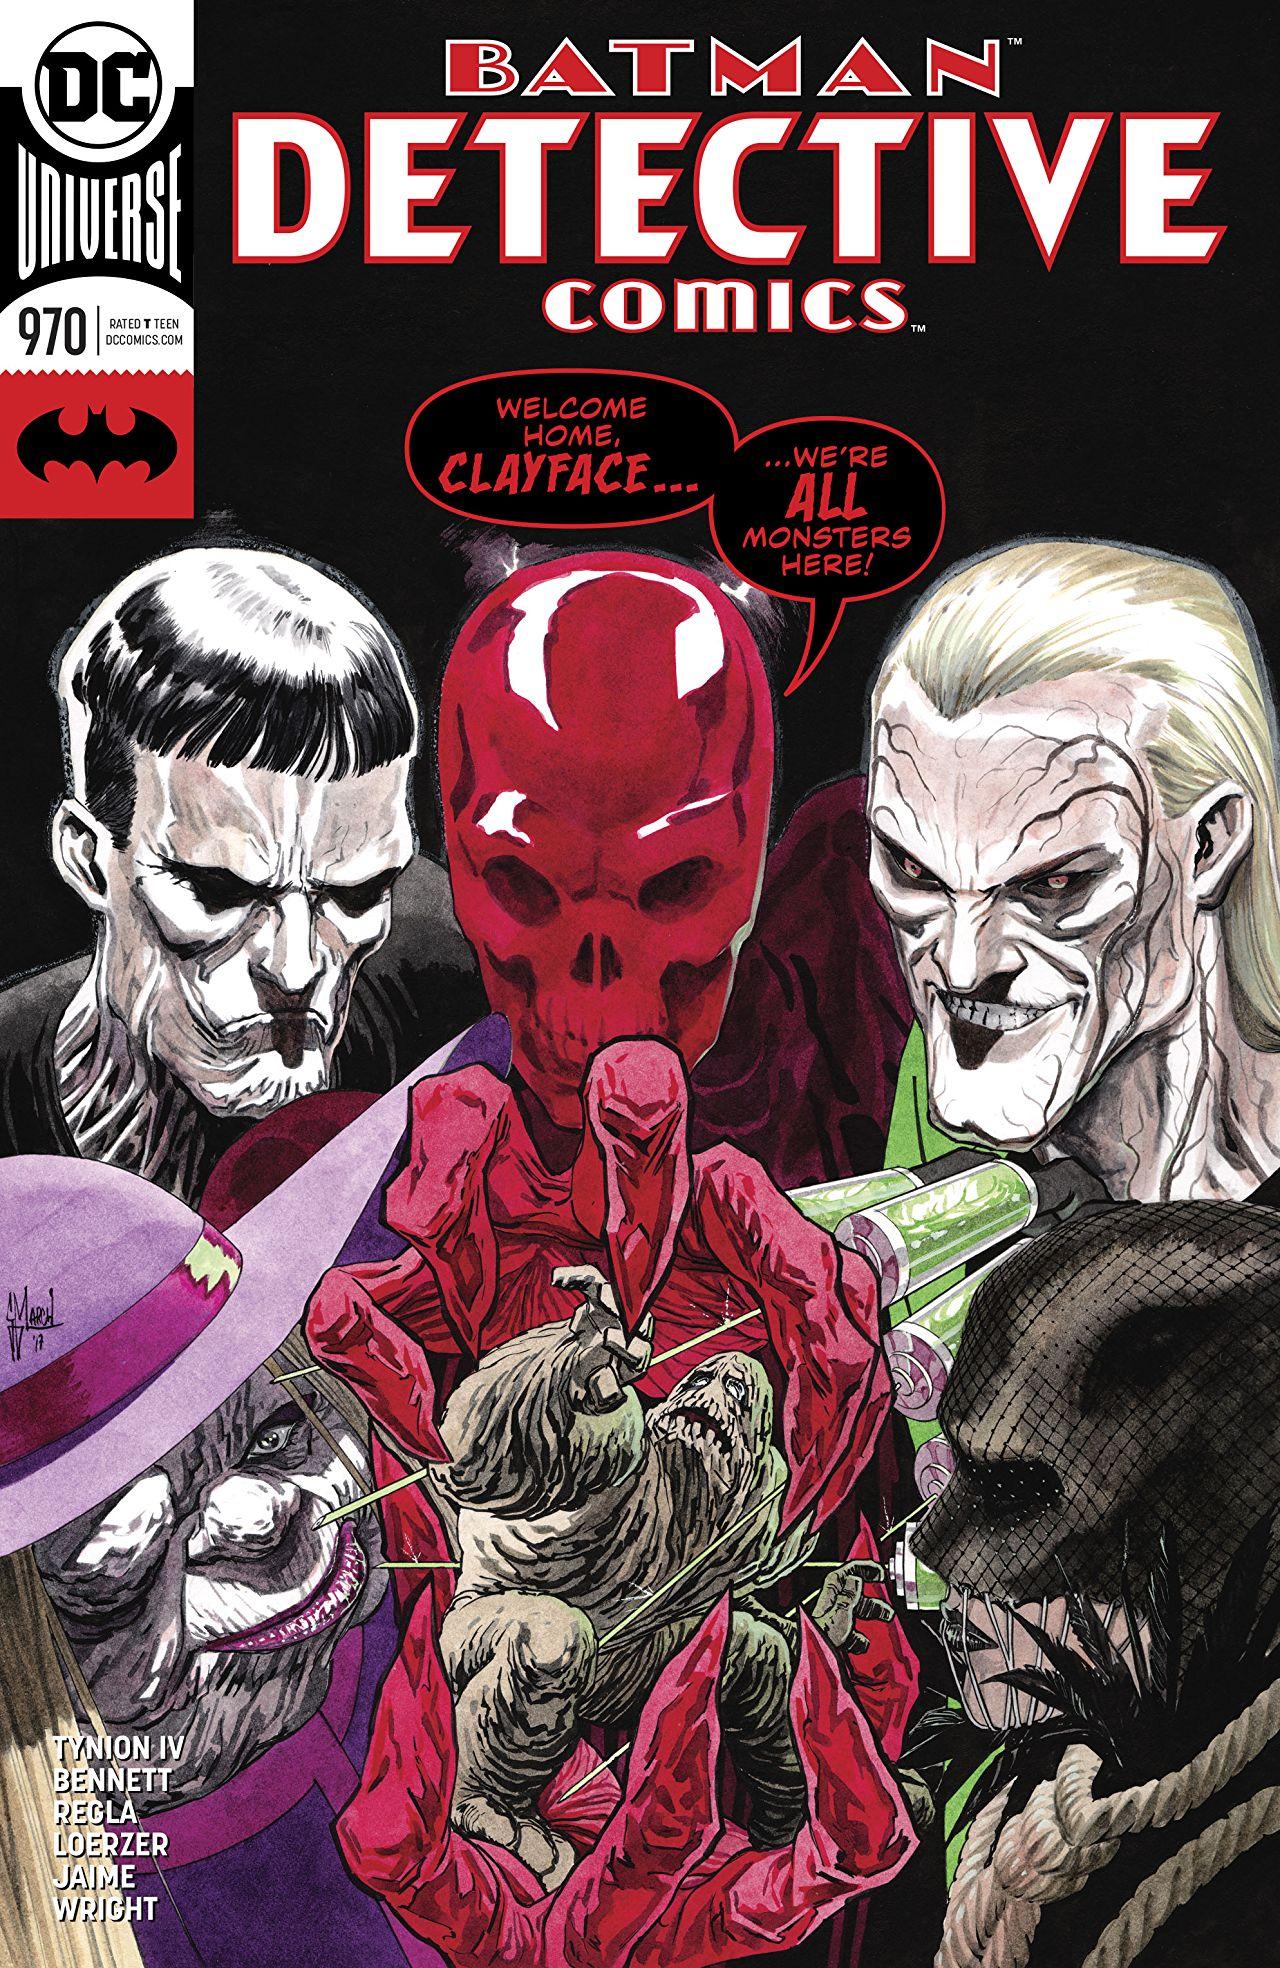 Detective Comics Vol. 1 #970